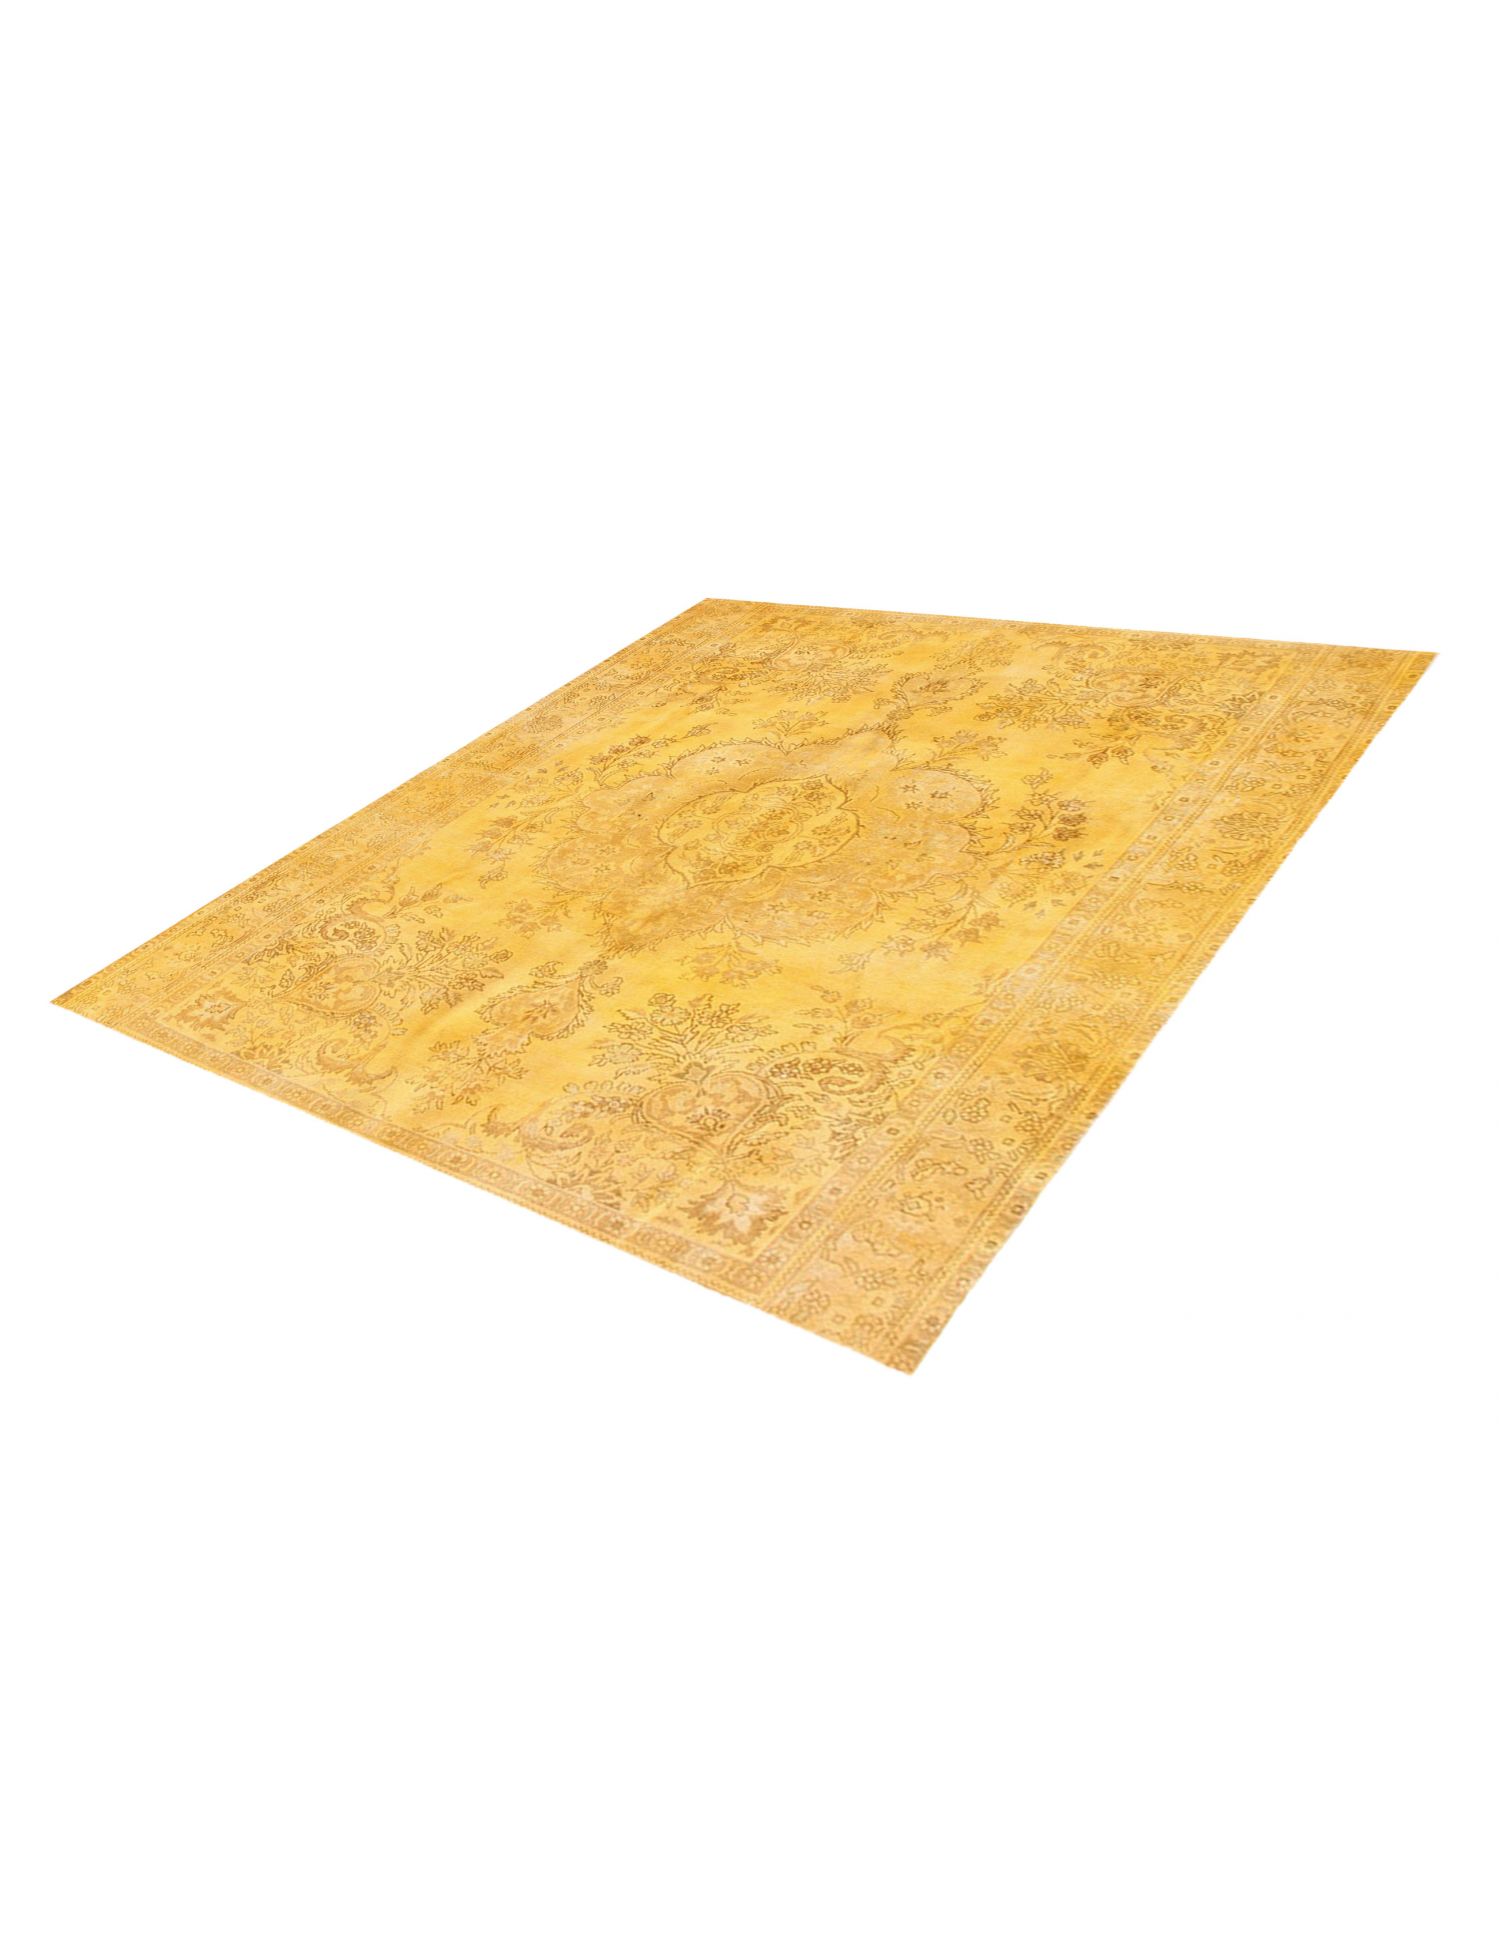 Persischer Vintage Teppich  gelb <br/>290 x 290 cm